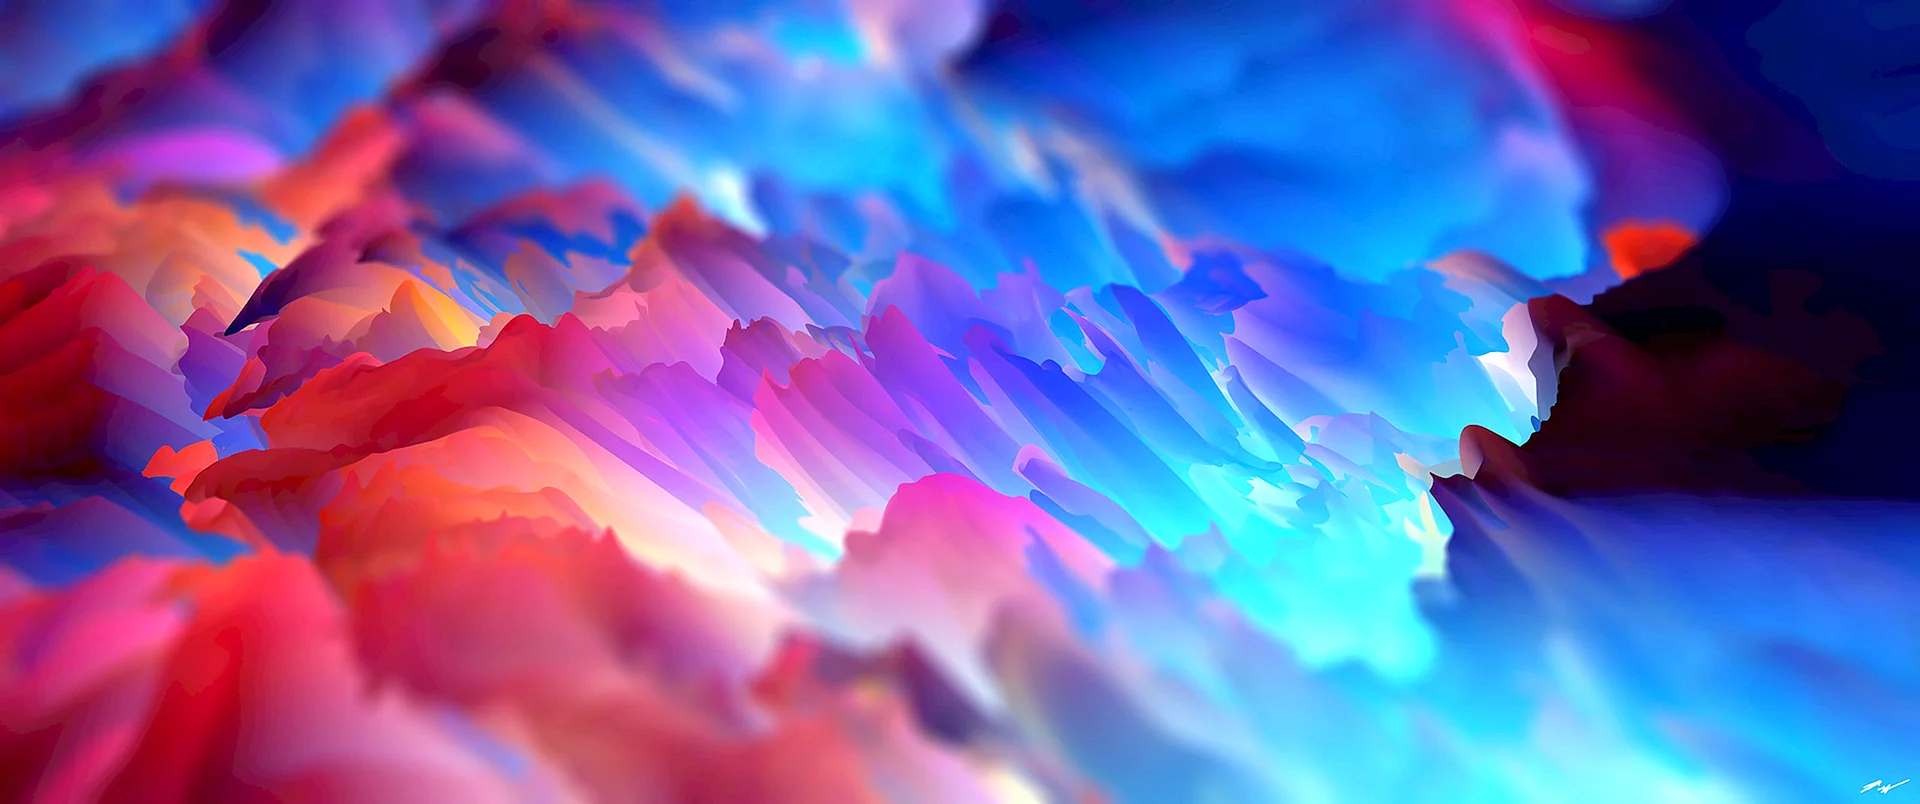 Colorful 4k Wallpaper